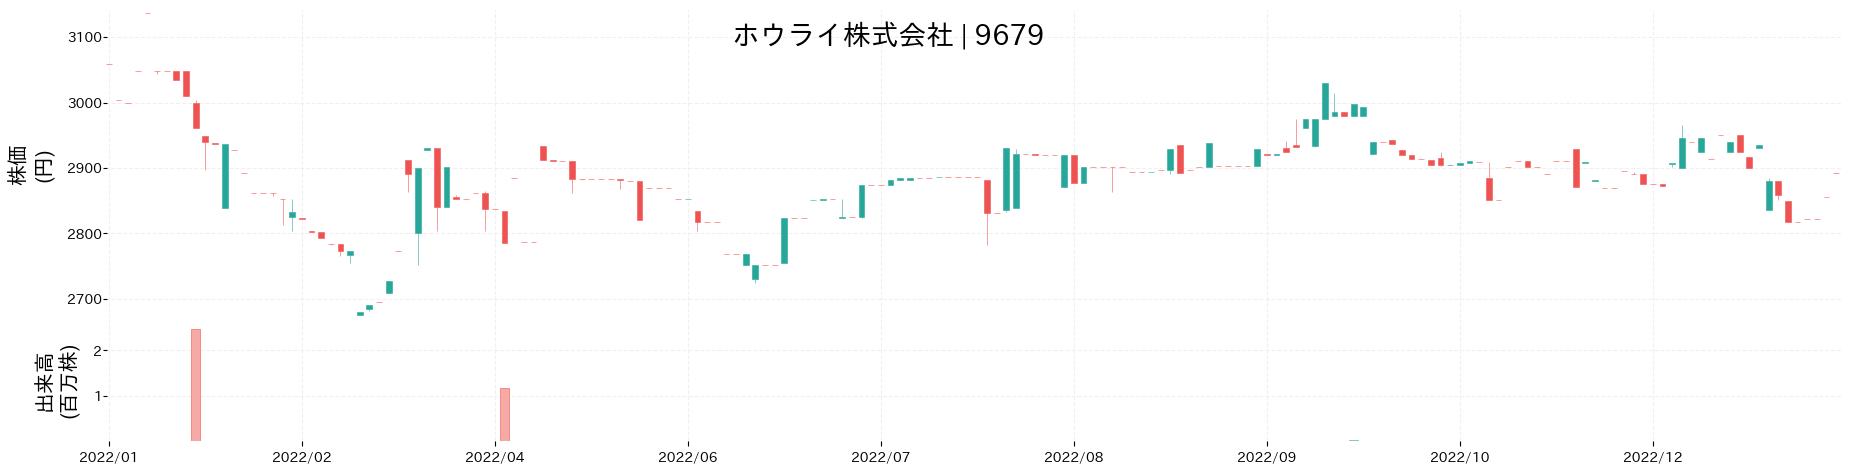 ホウライの株価推移(2022)